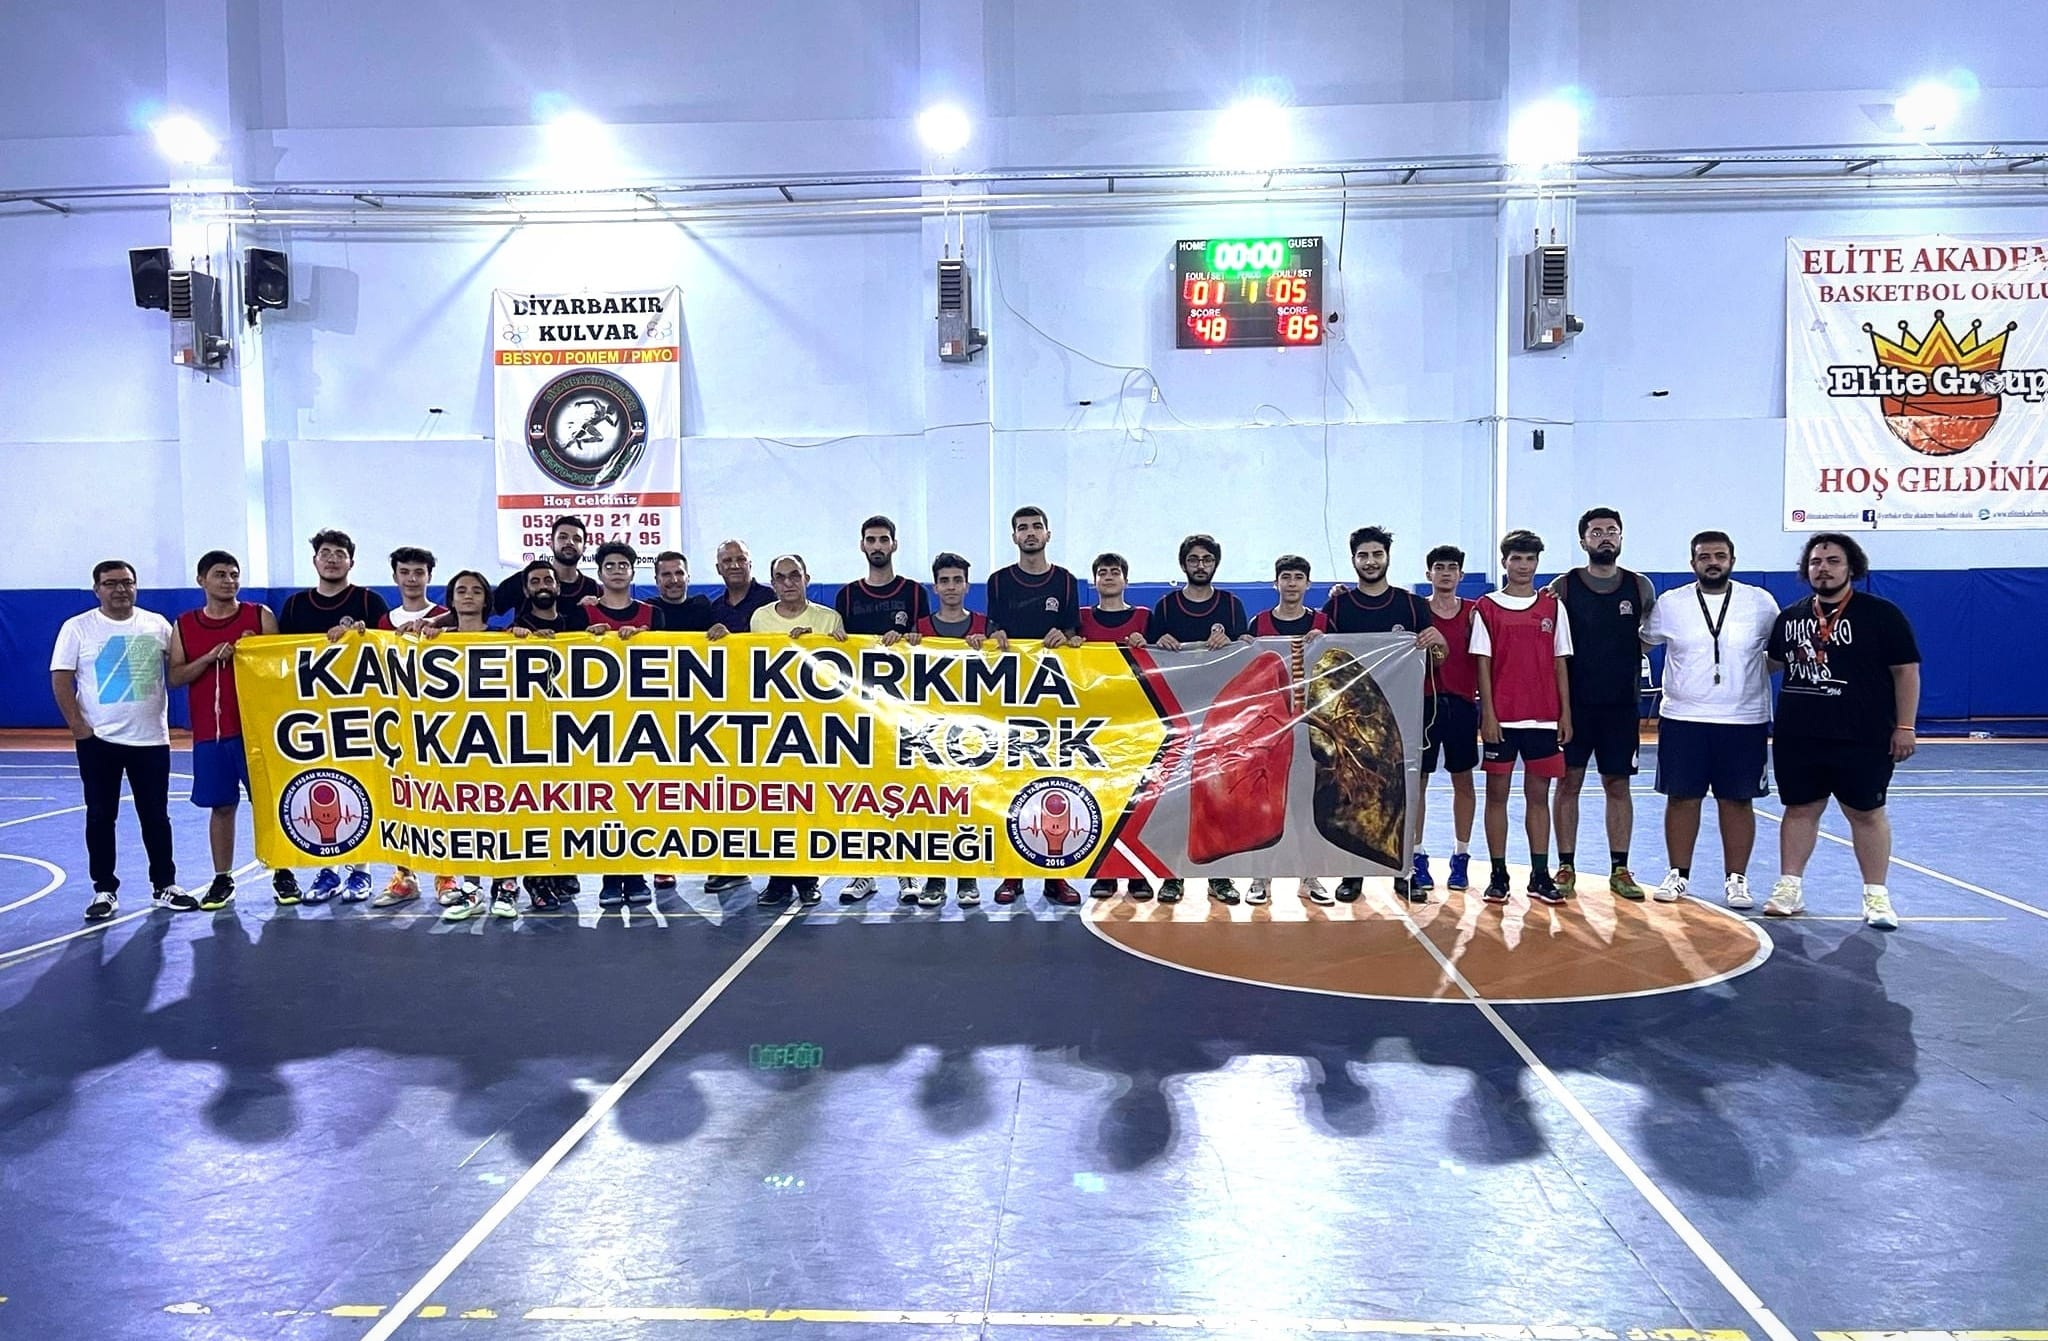 Milli Basketçi Baver Yücesoy adına Basketbol Turnuvası düzenlendi.